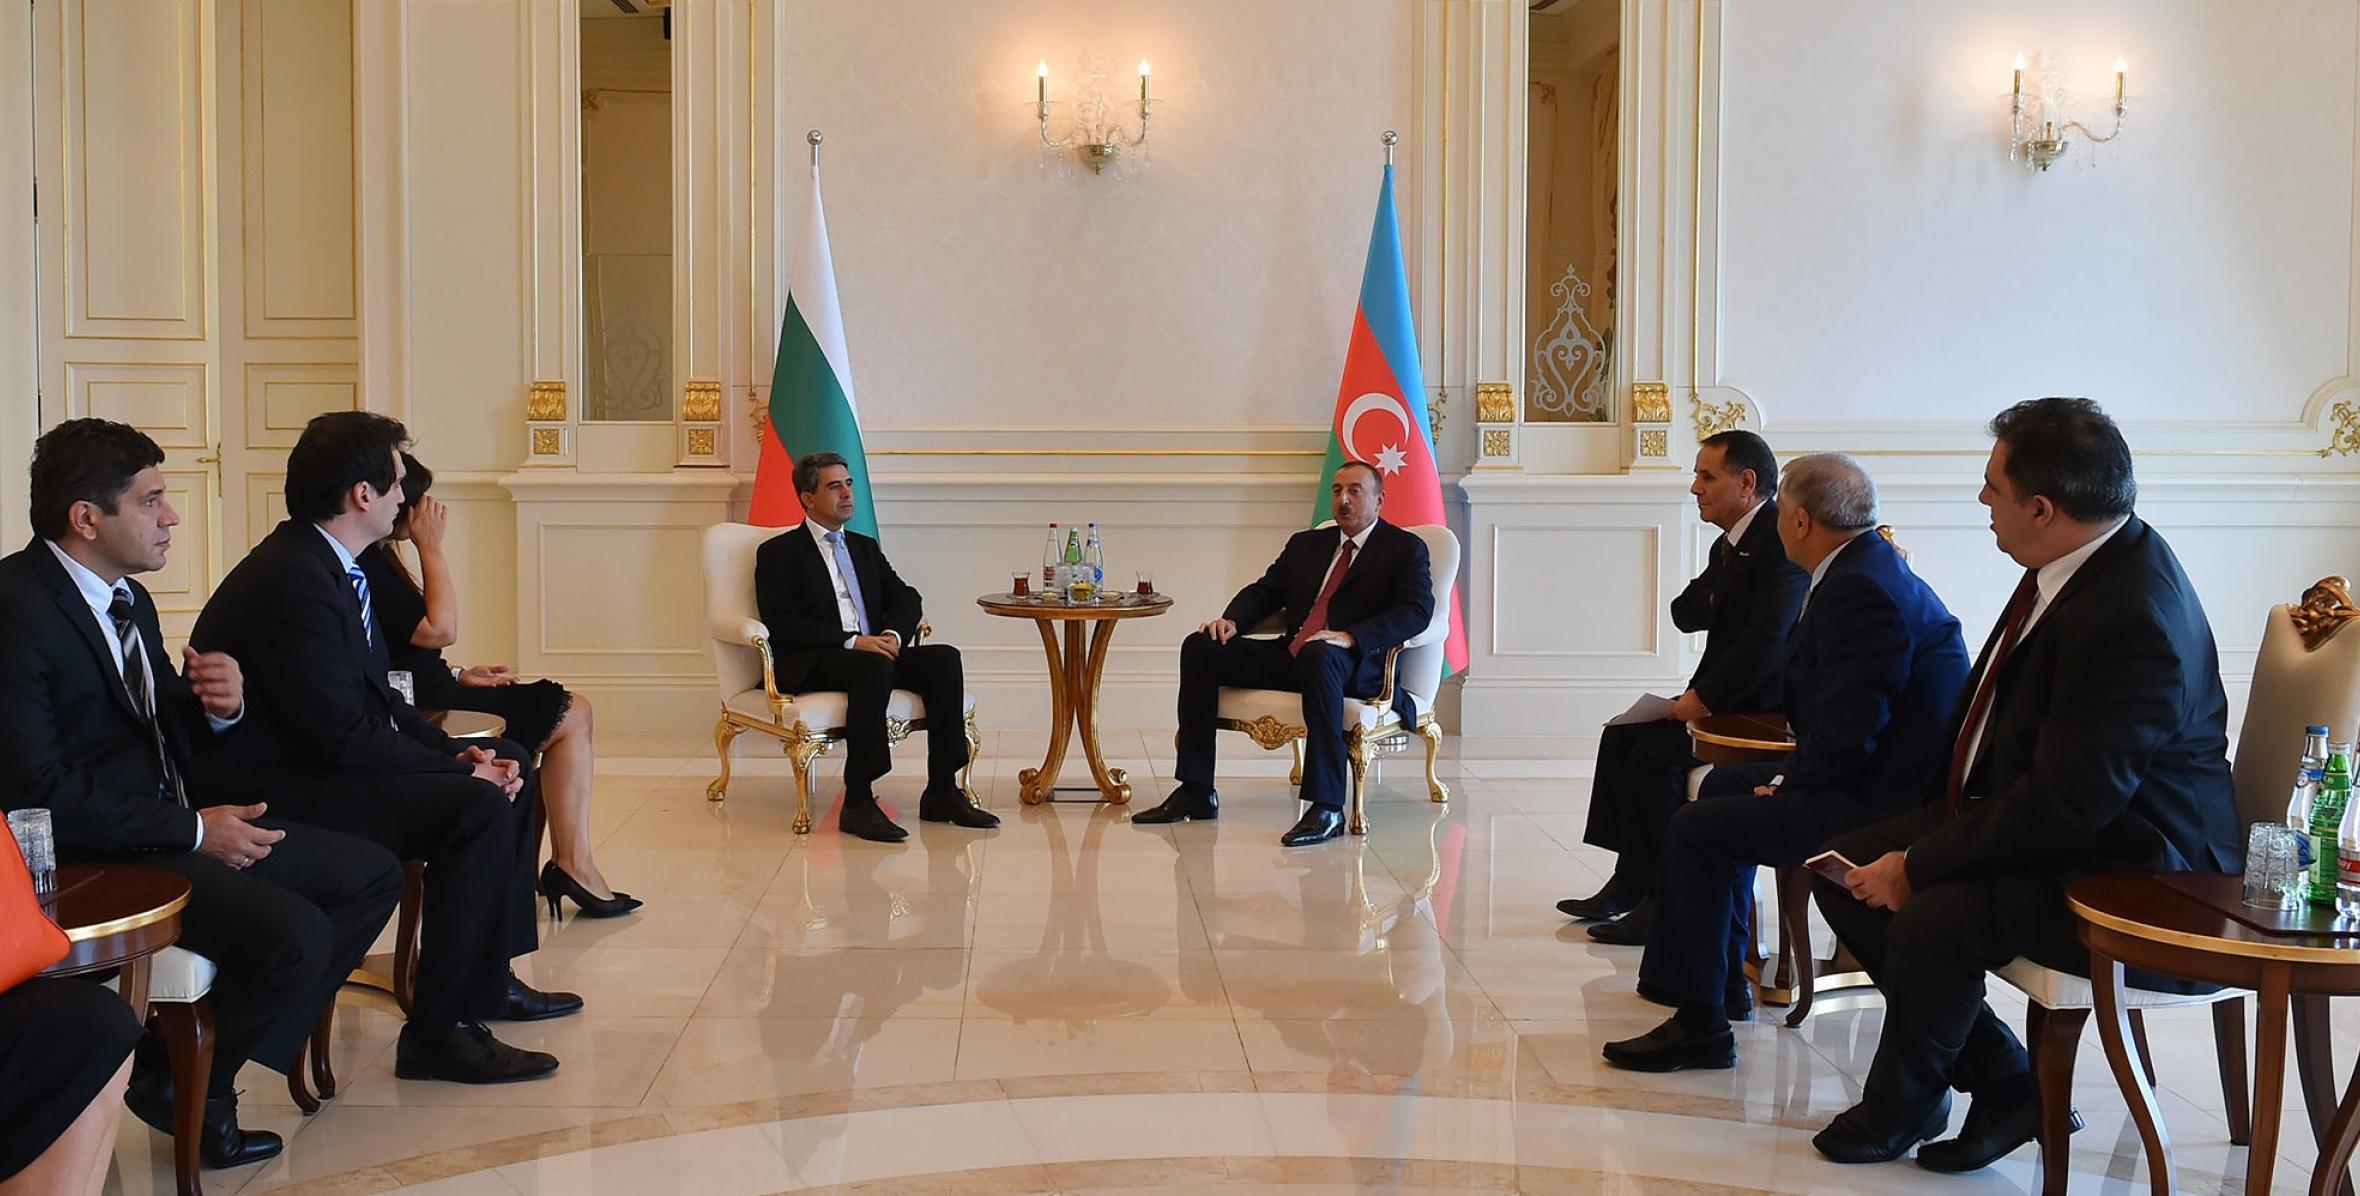 Состоялась встреча Ильхама Алиева и Президента Болгарии Росена Плевнелиева в расширенном составе с участием делегаций